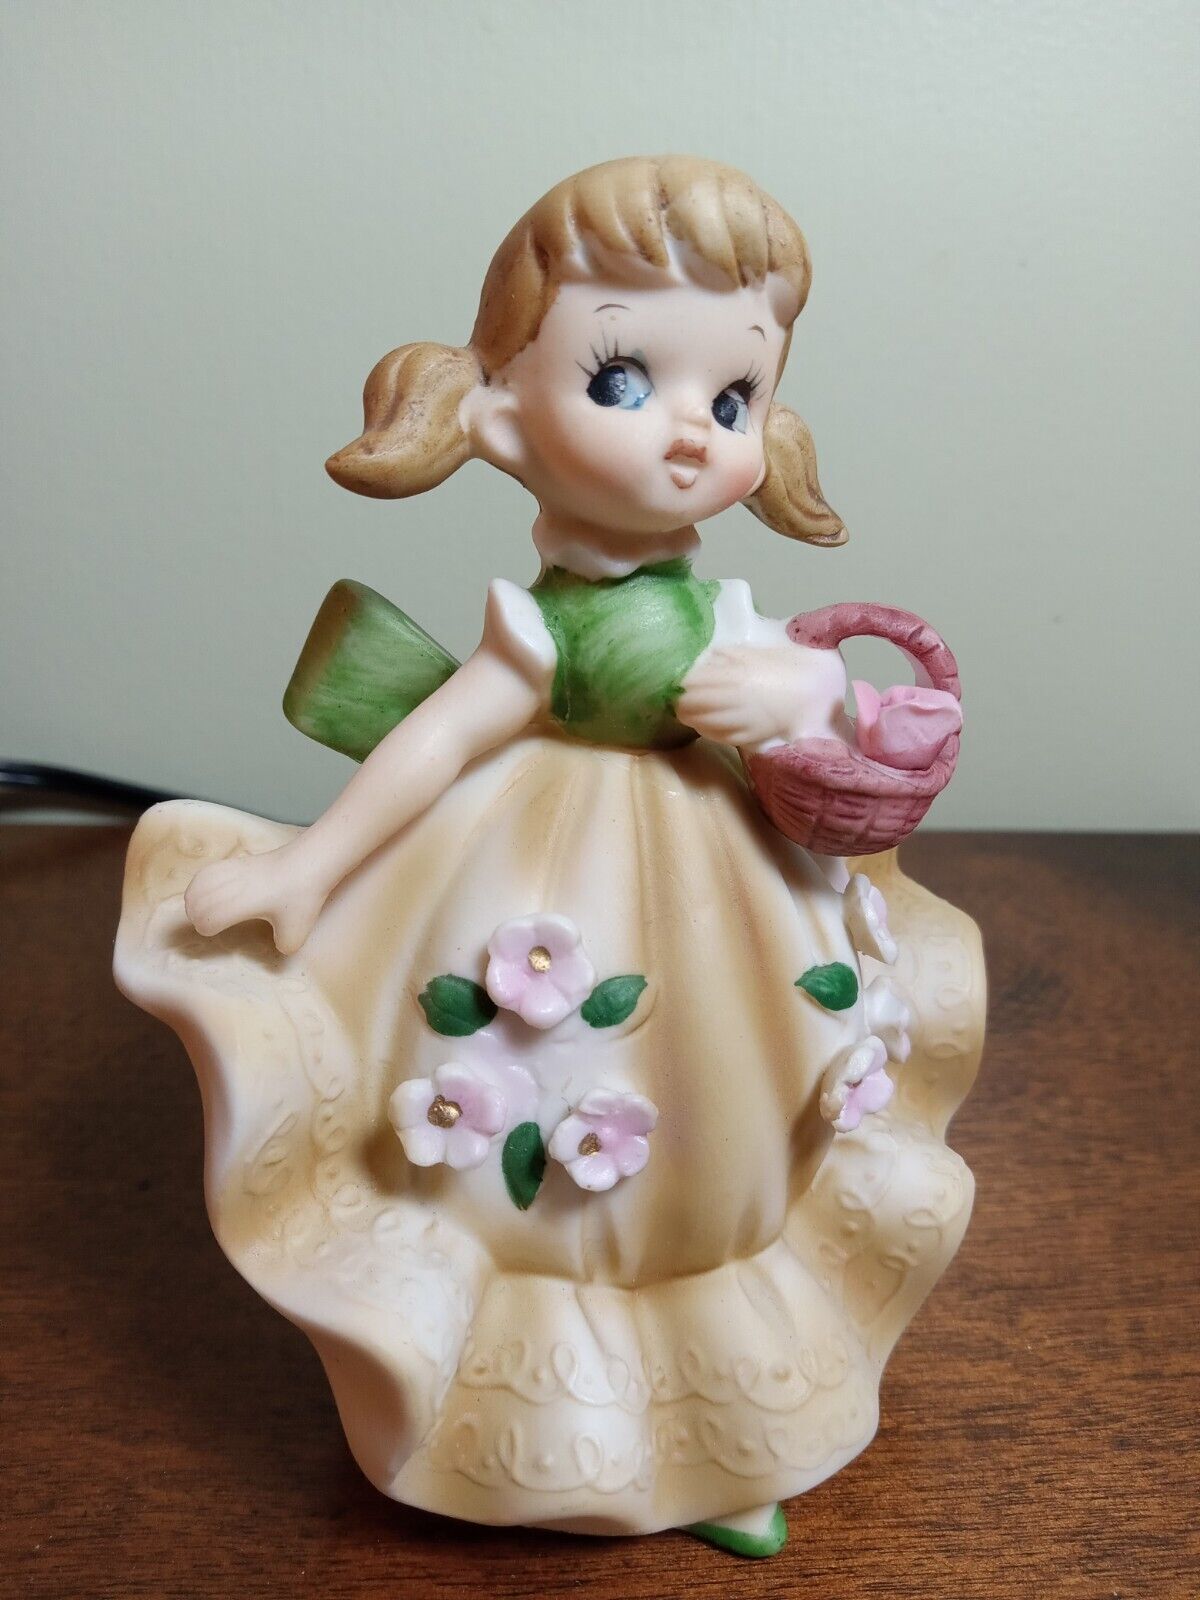 Vtg Lefton Japan Bisque Porcelain Bloomer Girl Figurine